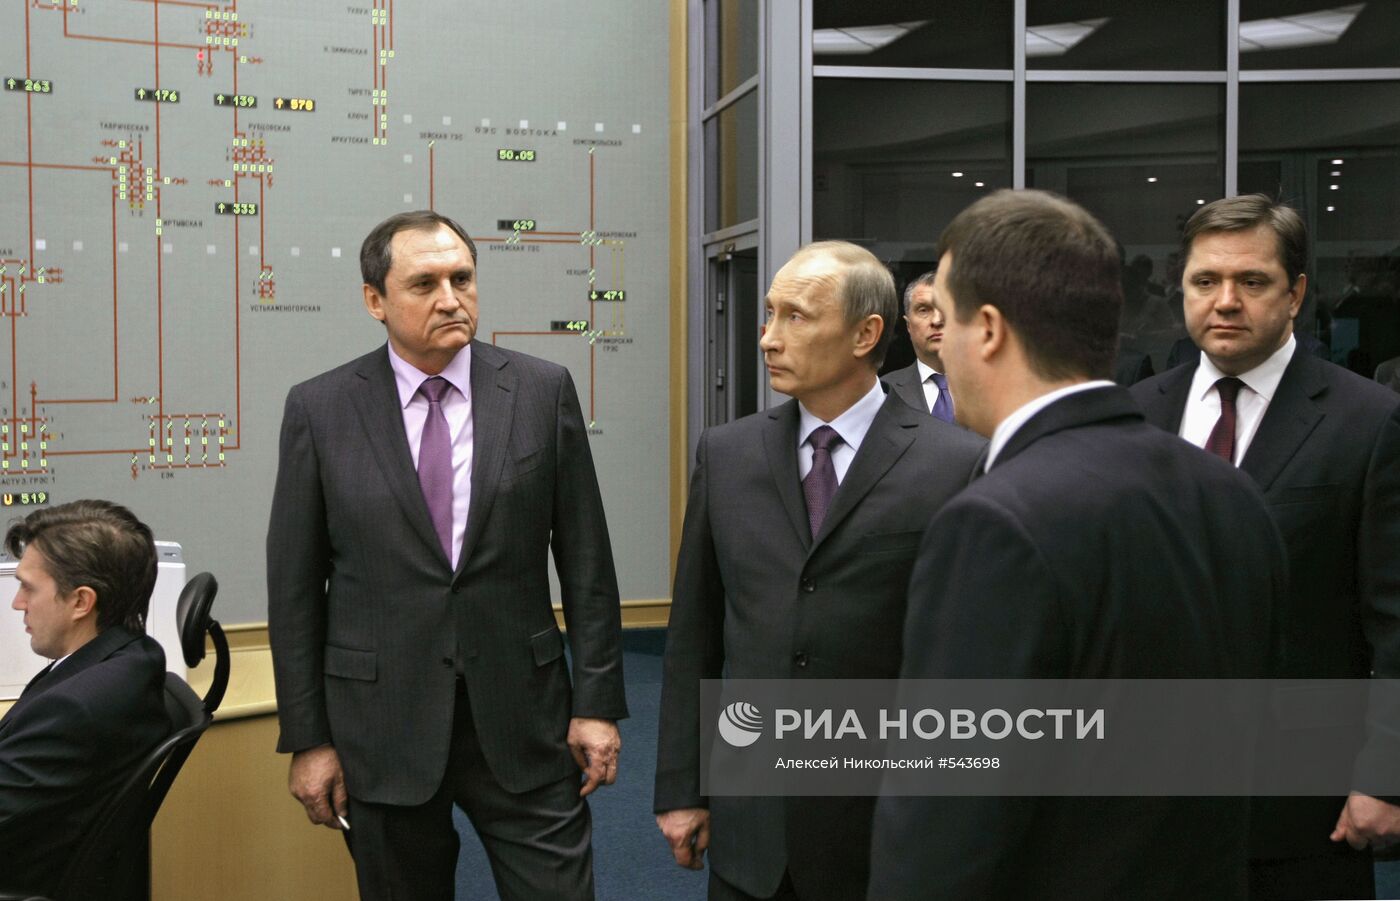 Премьер-министр РФ Владимир Путин посетил ОАО "СО ЕЭС" в Москве